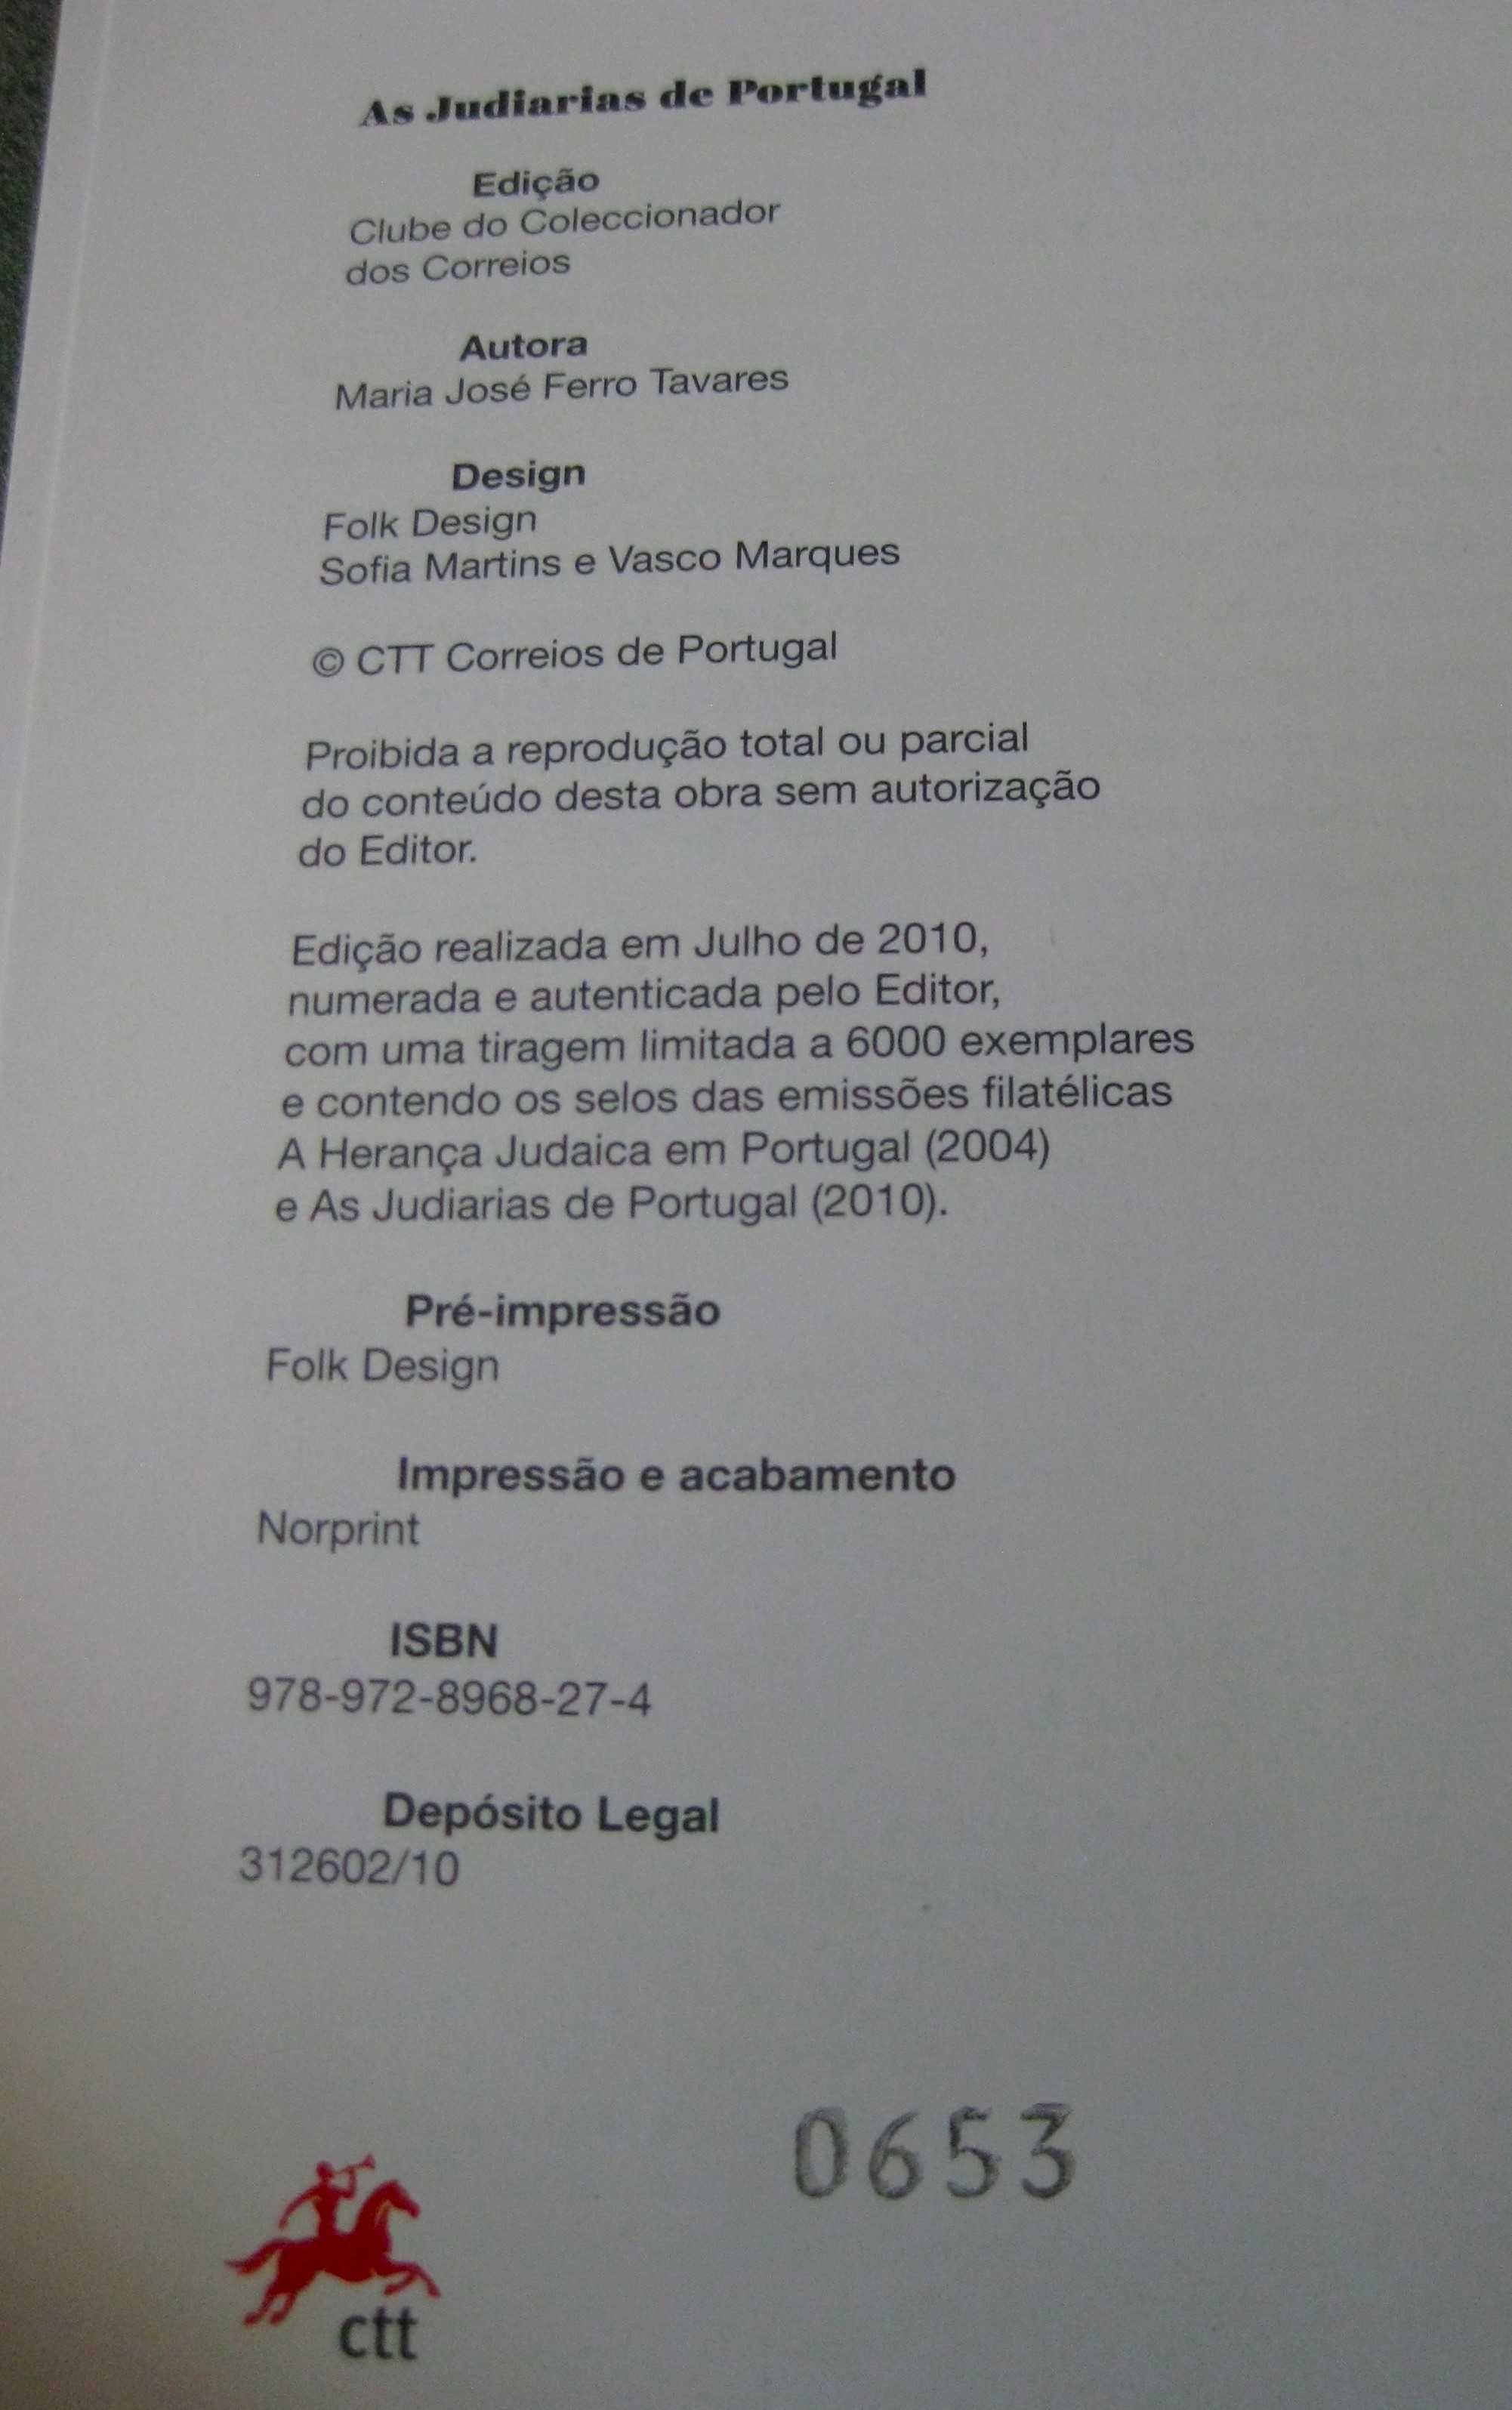 Livro "As Judiarias de Portugal"  CTT  -  NOVO